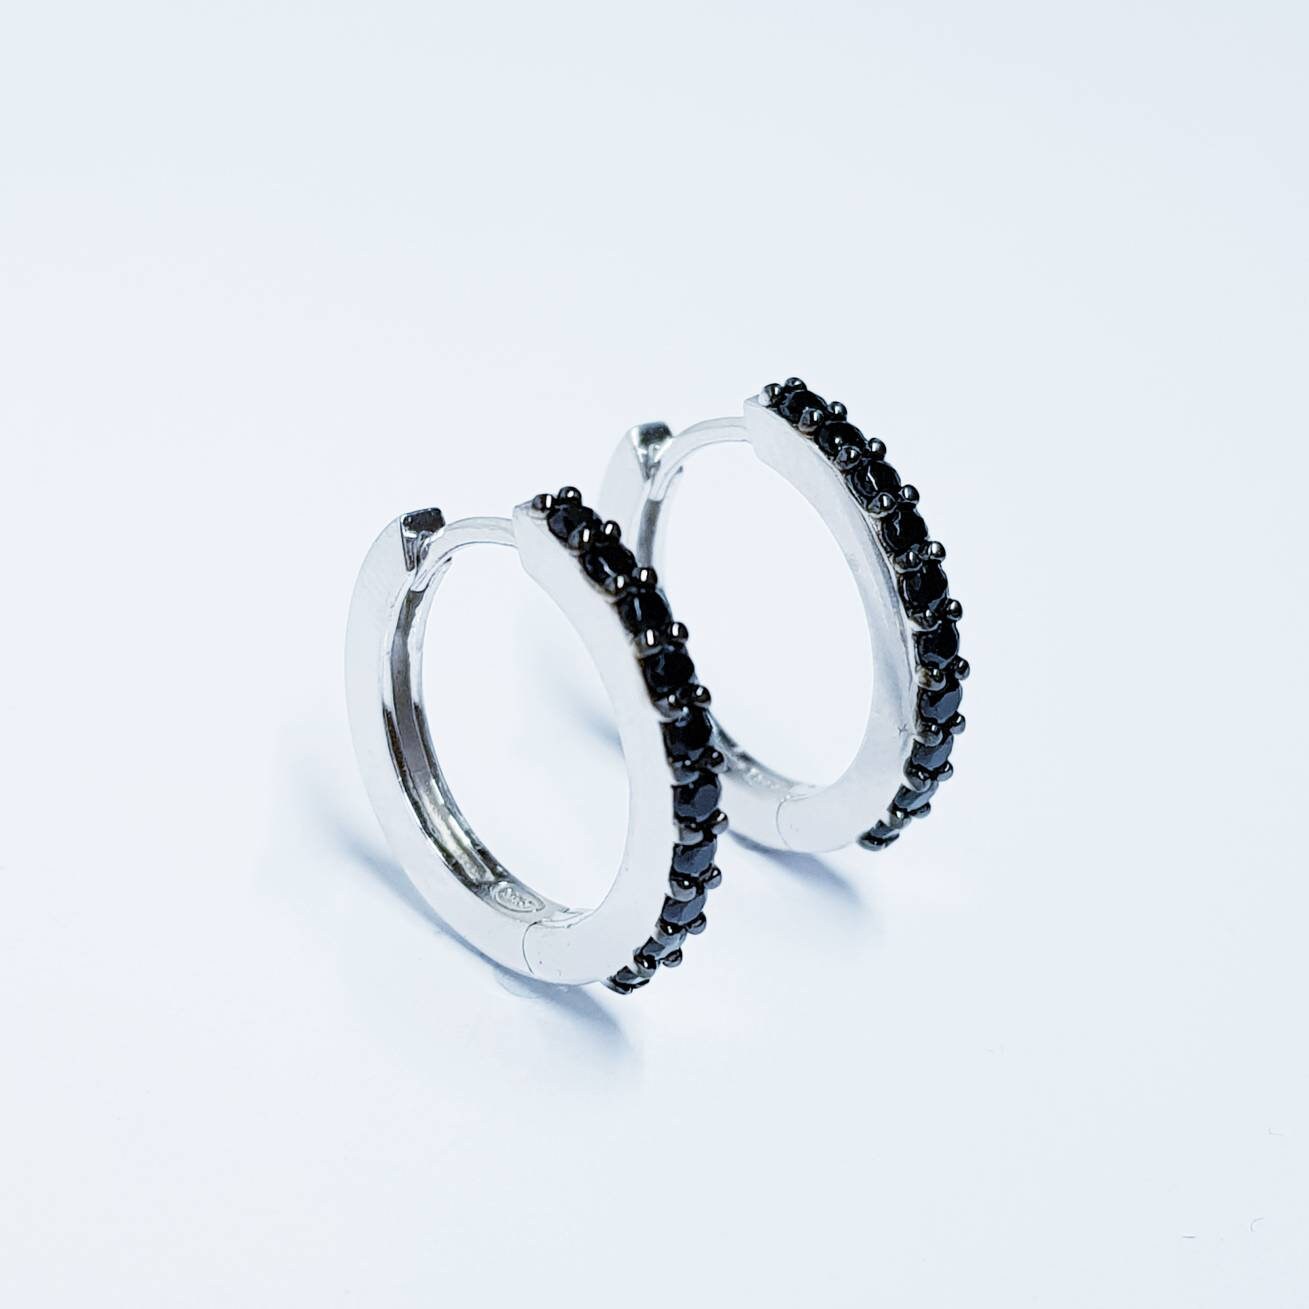 Black hoop earrings, small hoop earrings, silver hoop earrings, black diamond earrings, bridesmaid earrings